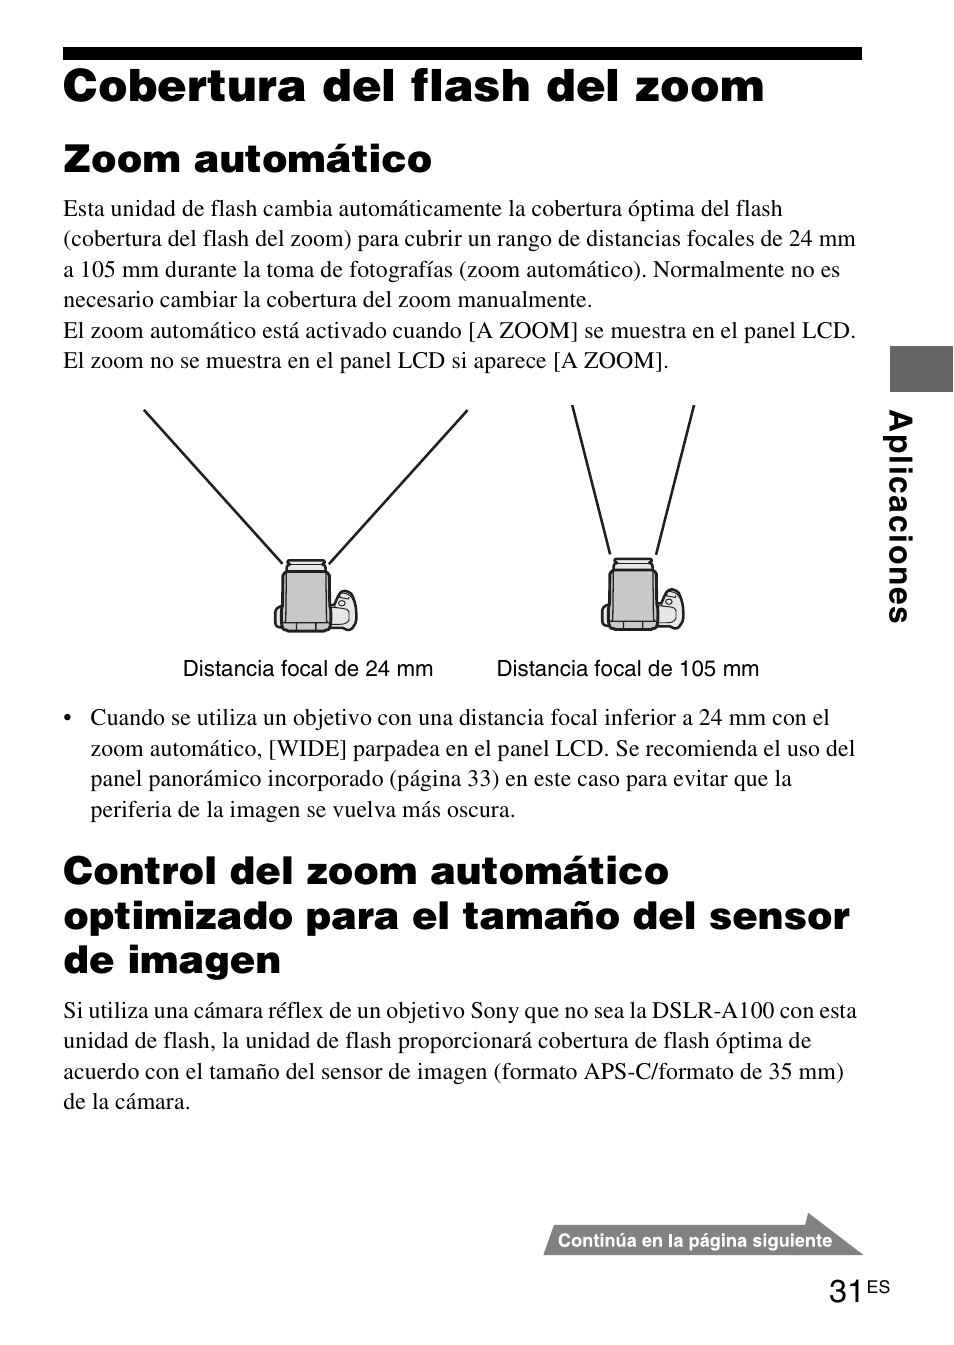 Cobertura del flash del zoom, Na 31, Zoom automático | Инструкция по эксплуатации Sony HVL-F58AM | Страница 31 / 339